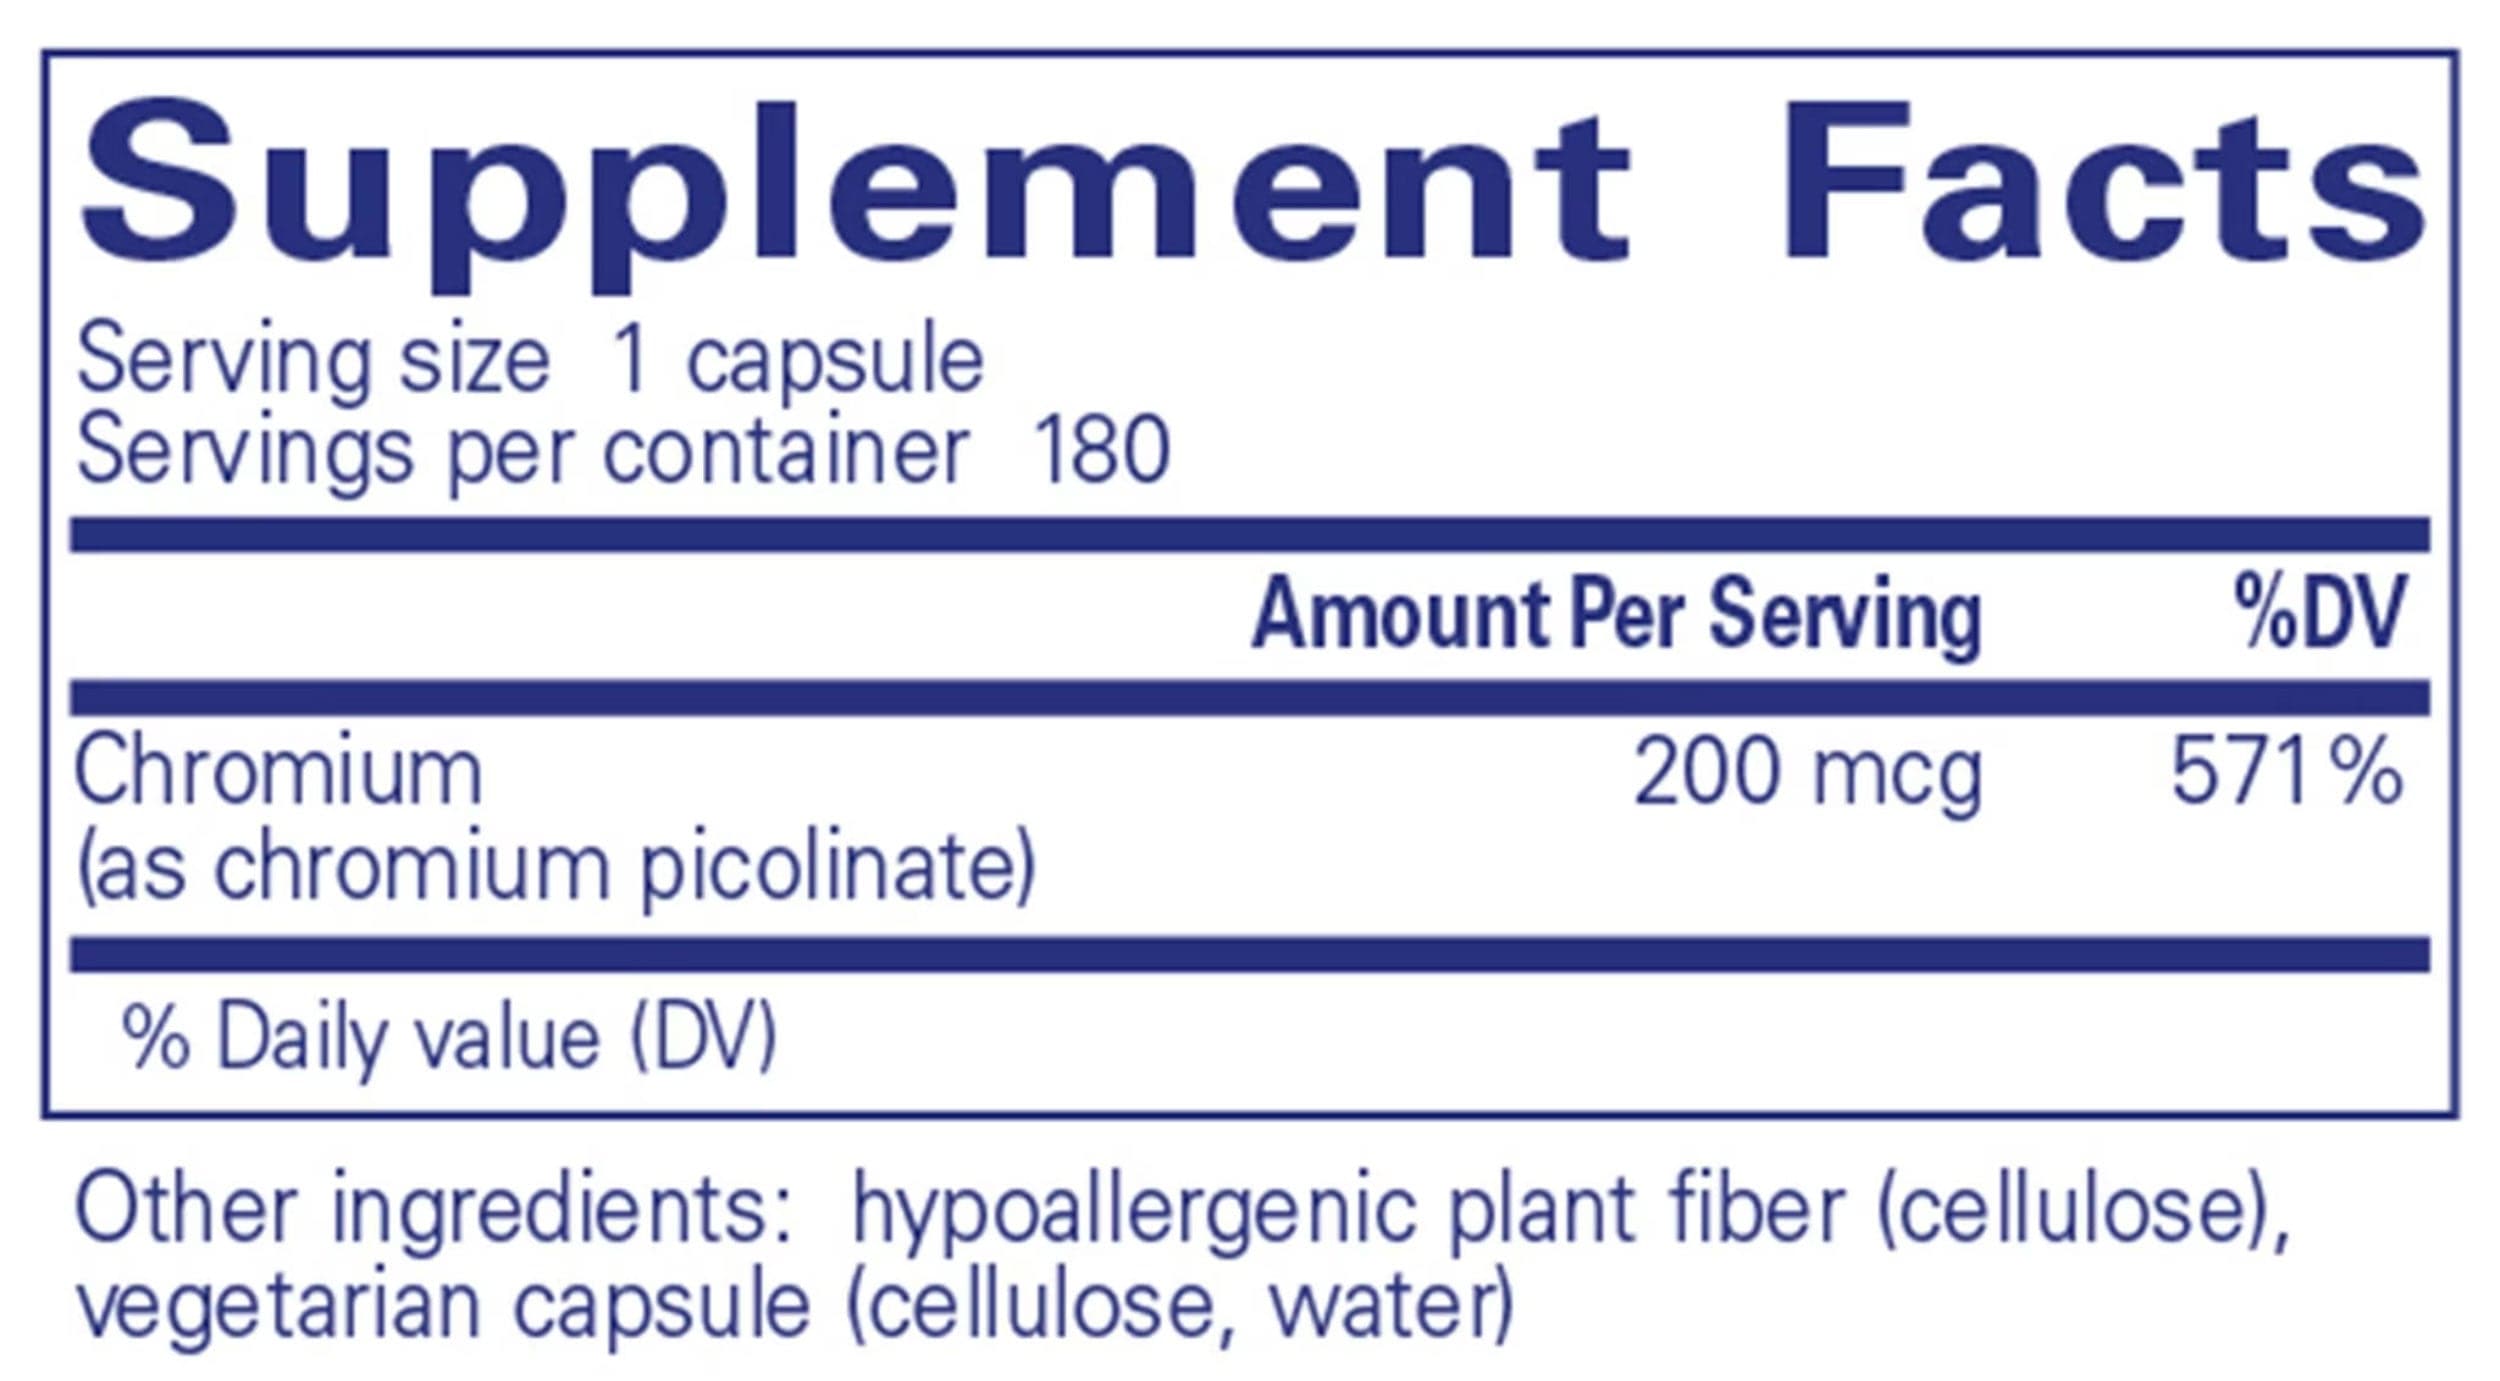 Pure Encapsulations Chromium (picolinate) 200mcg Ingredients 